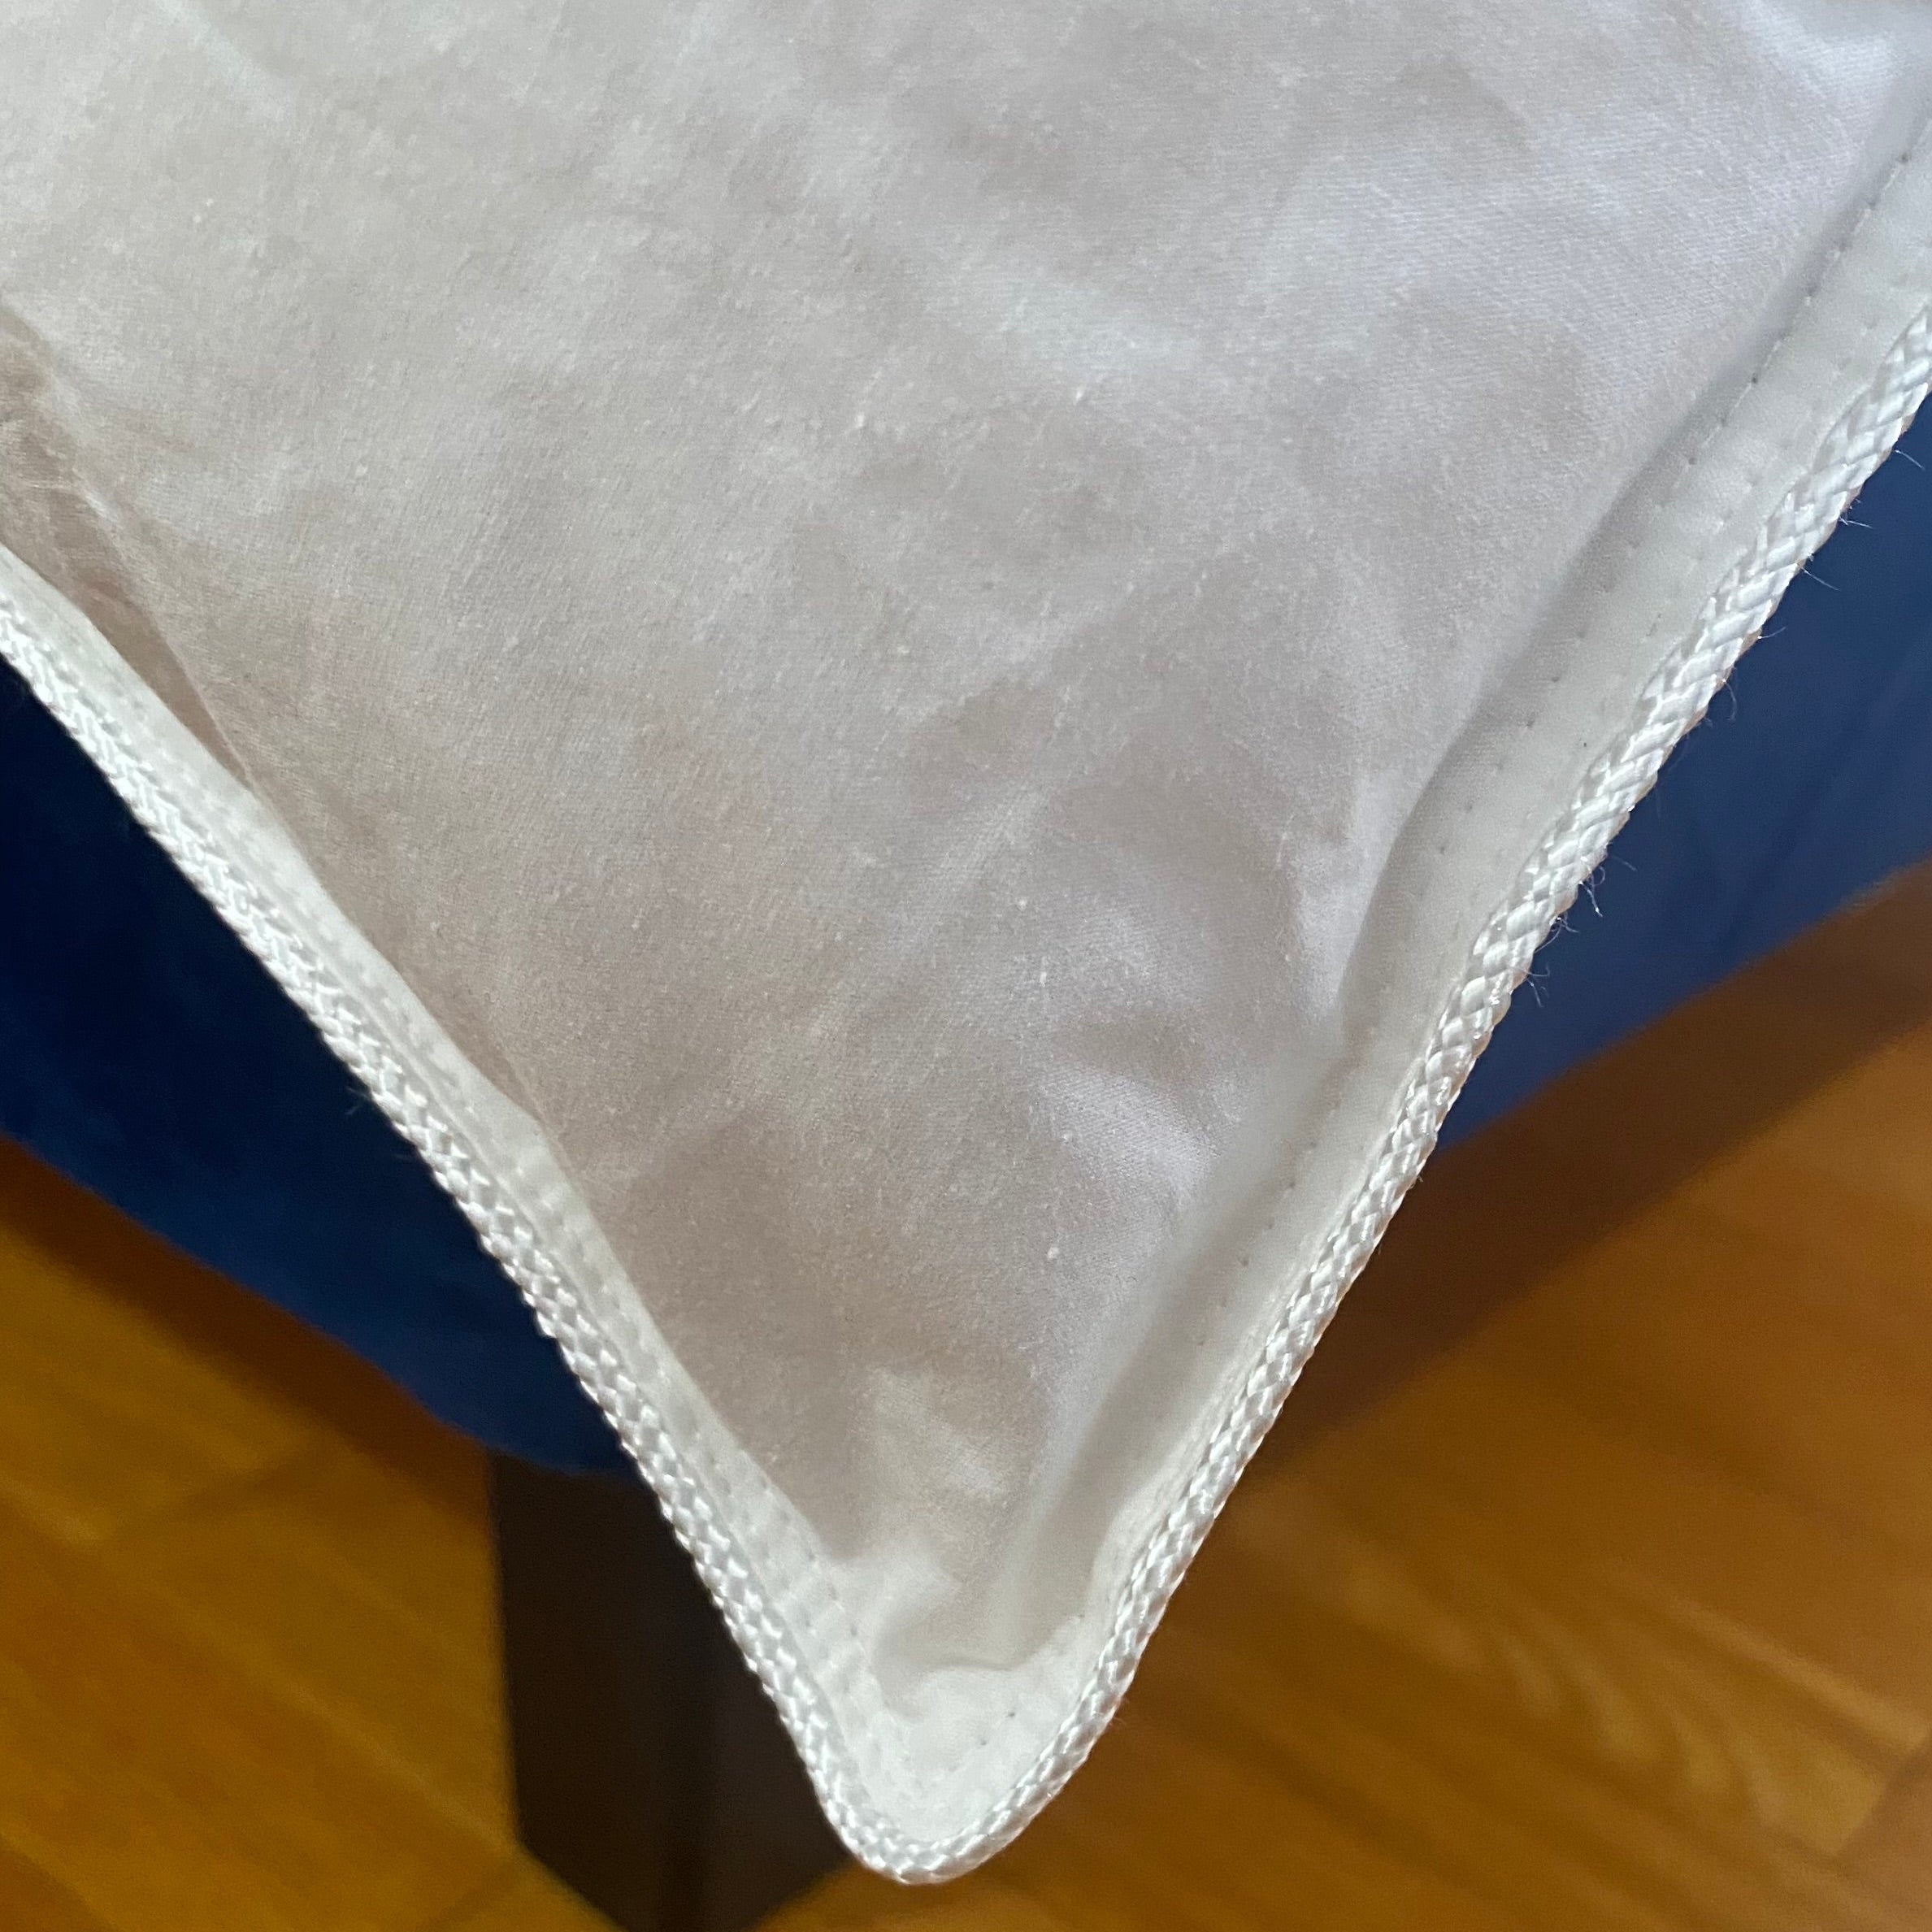 Cotton duvet/quilt/ comforter/ blanket : Kapas Living